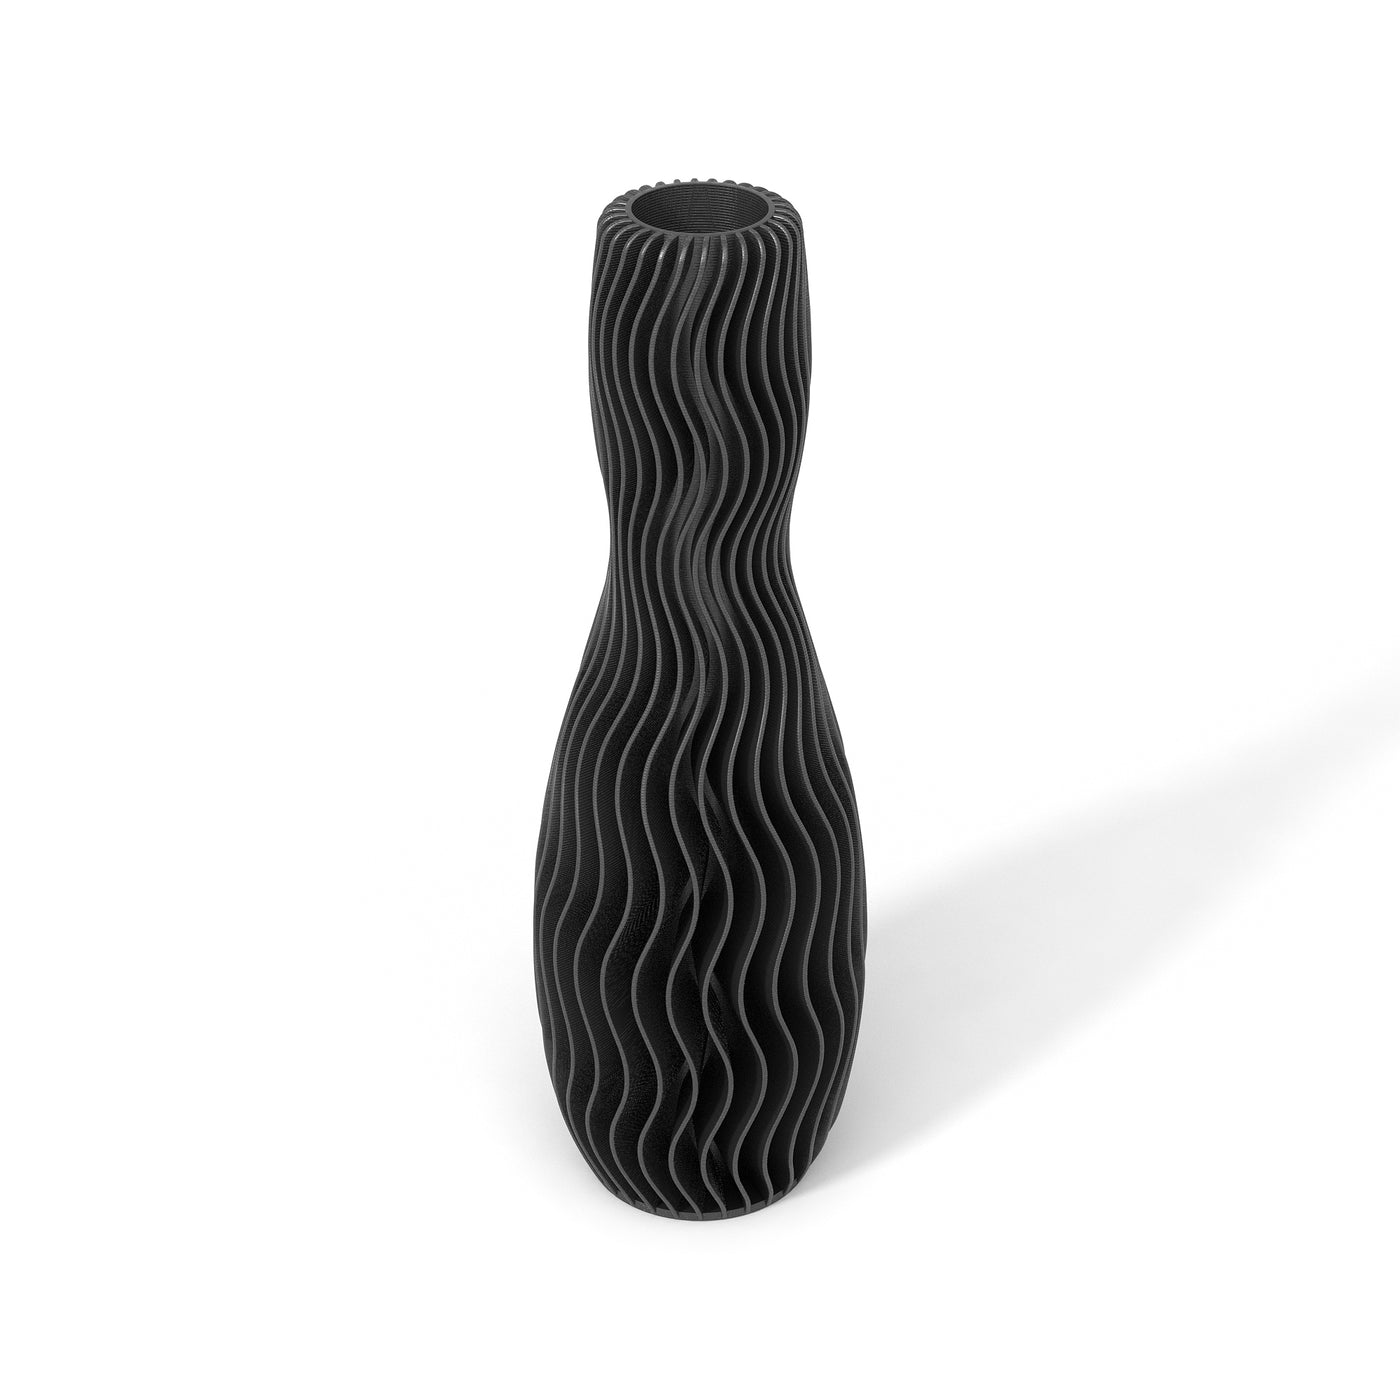 Černá designová váza 3D print WAVE 4